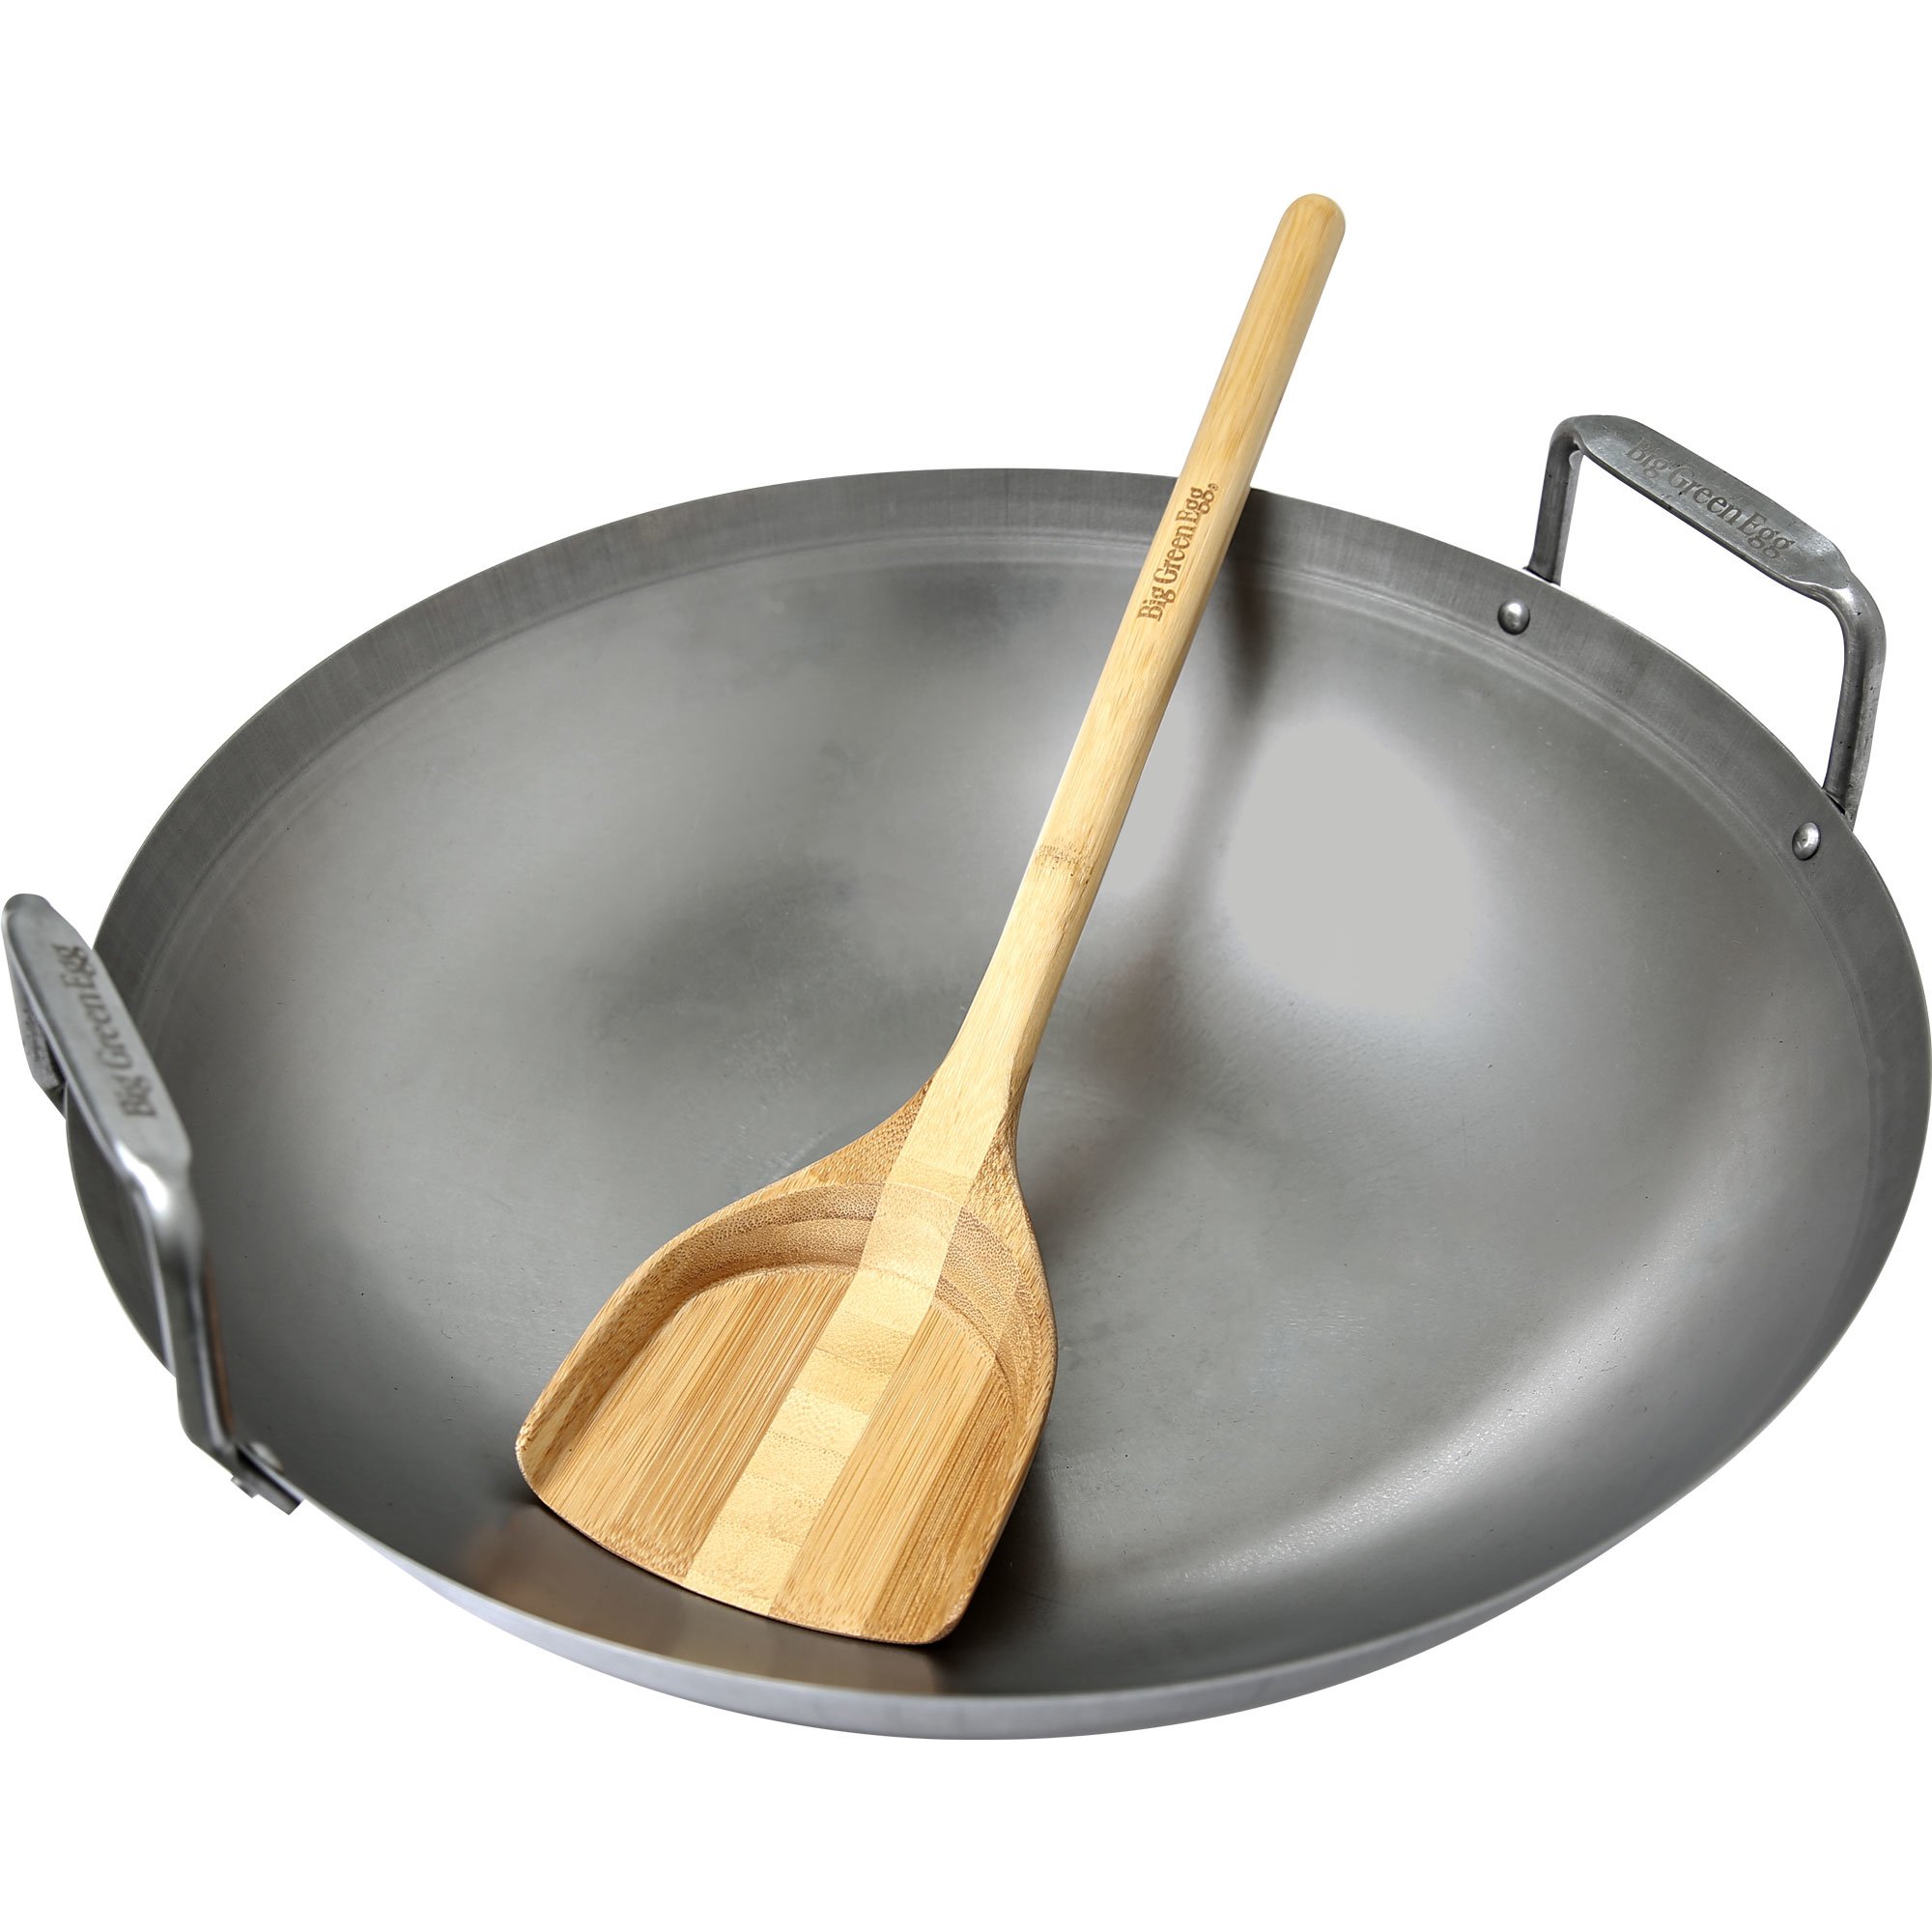 #1 på vores liste over wokpander er Wokpande